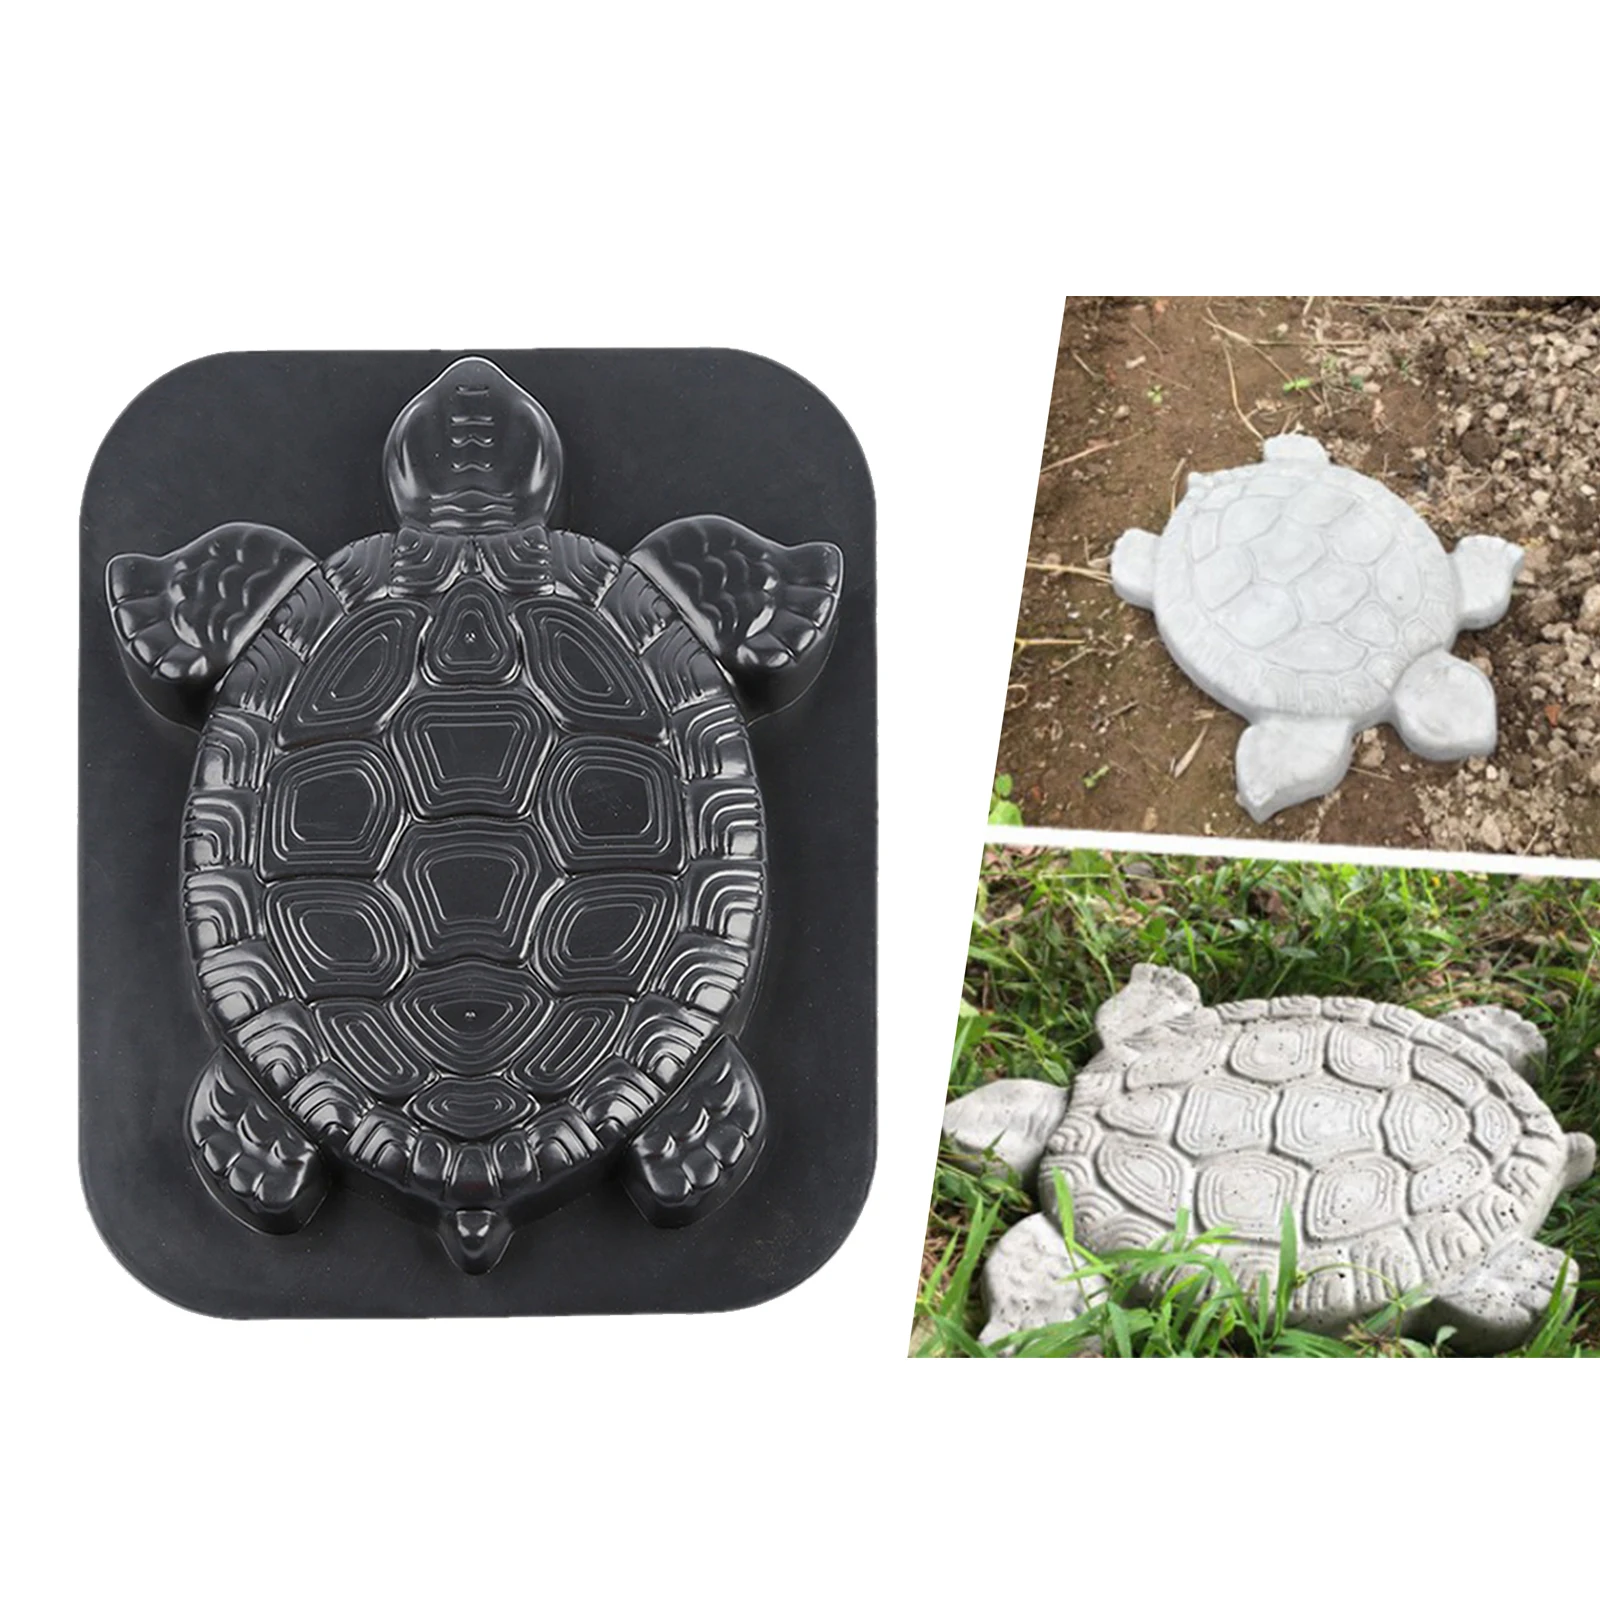 

Трафарет для садового мощения в форме черепахи, форма для шагового камня, бетонная цементная форма из АБС-пластика, черепаха, садовый декор ...